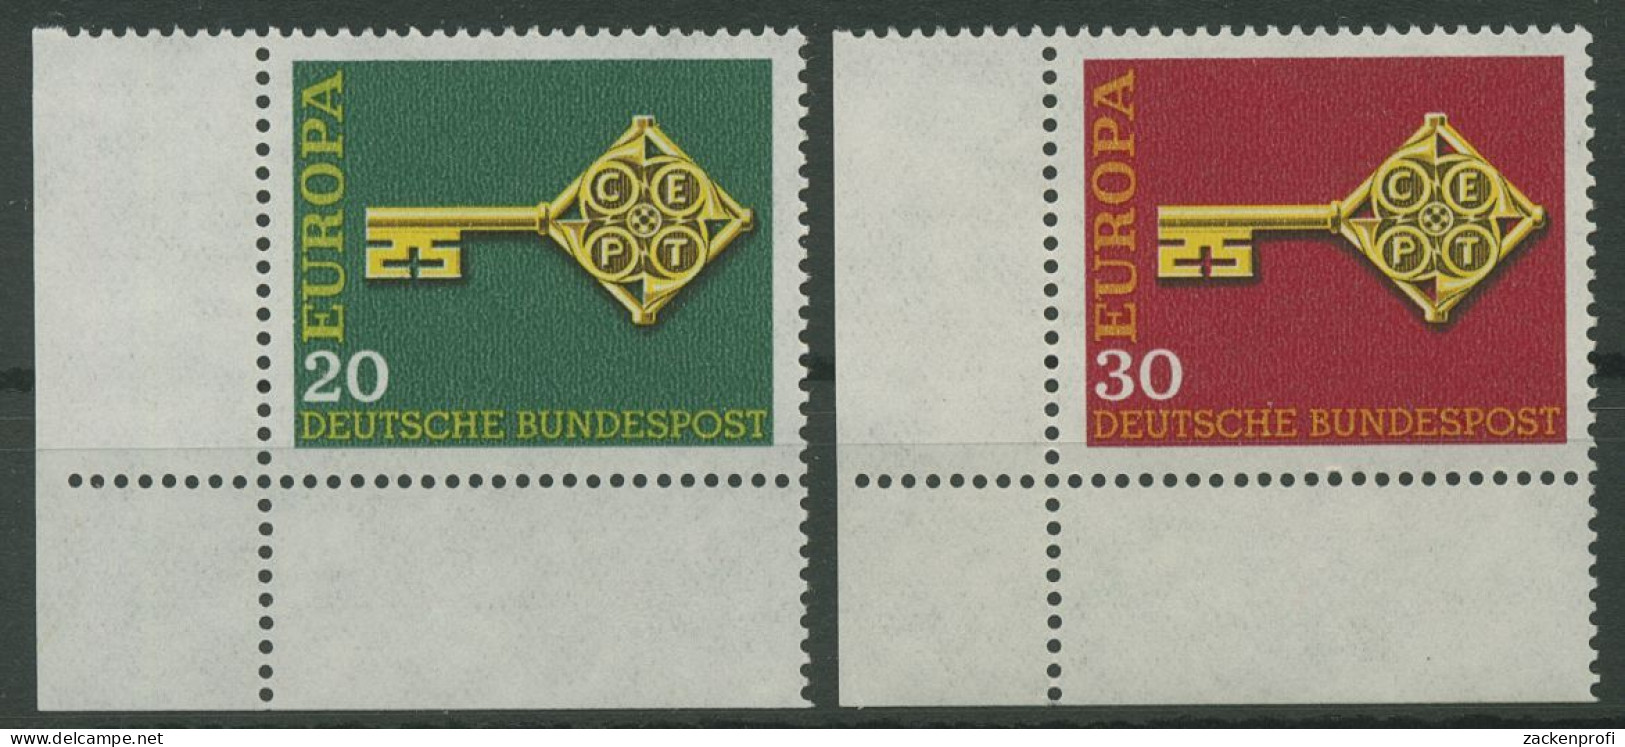 Bund 1968 Europa CEPT 559/60 Ecke 3 Unten Links Postfrisch (E842) - Unused Stamps